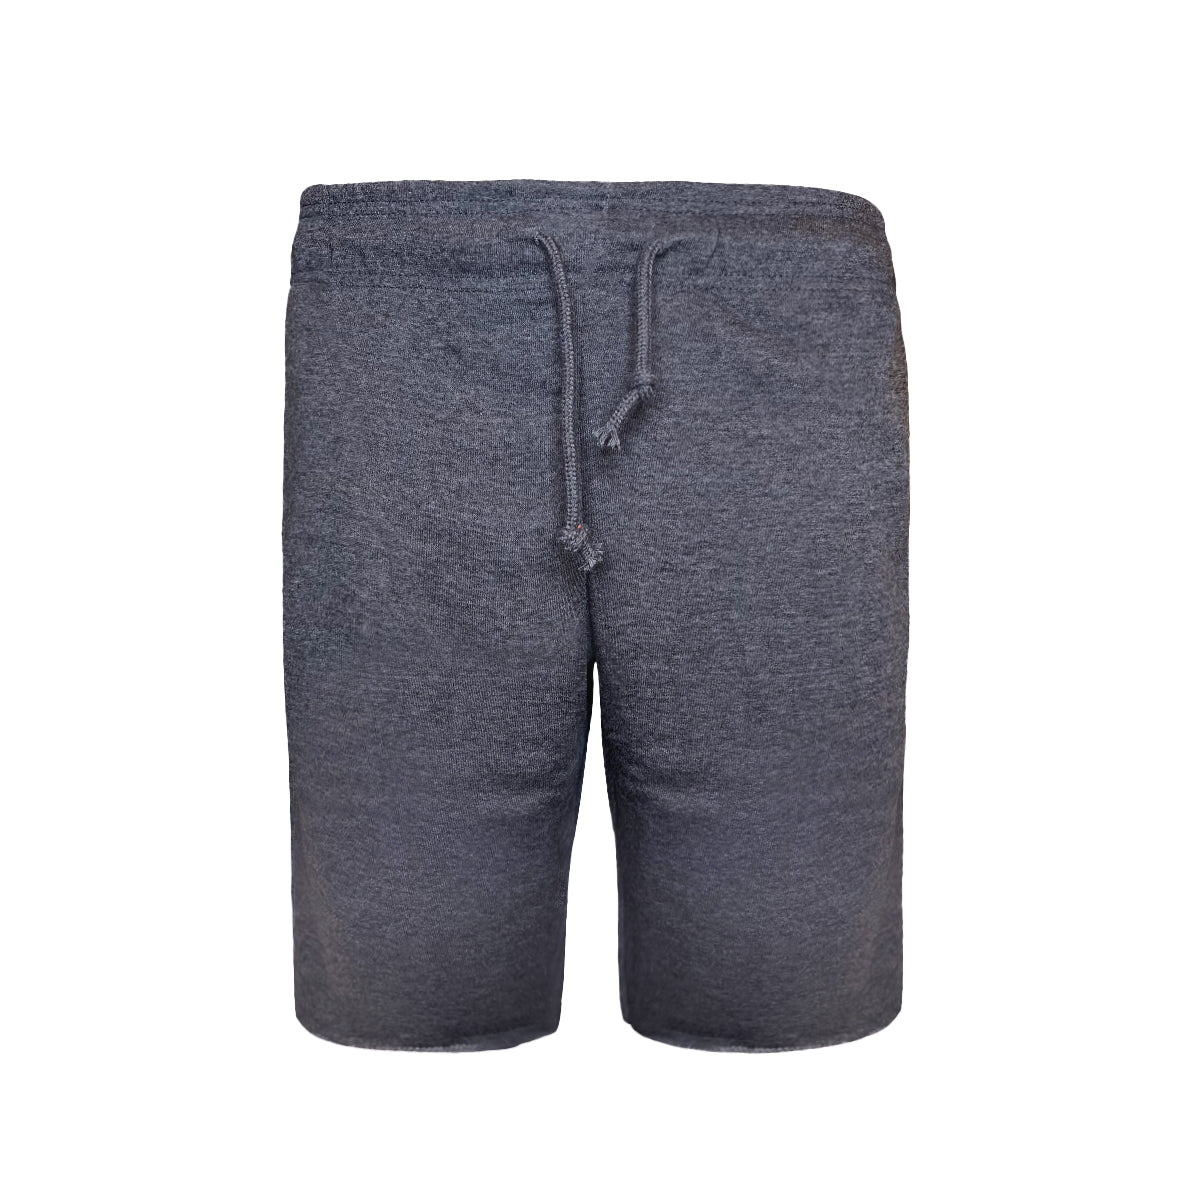 6030 - Adult Smart Shorts-Charcoal Heather Color - AF APPARELS(USA)